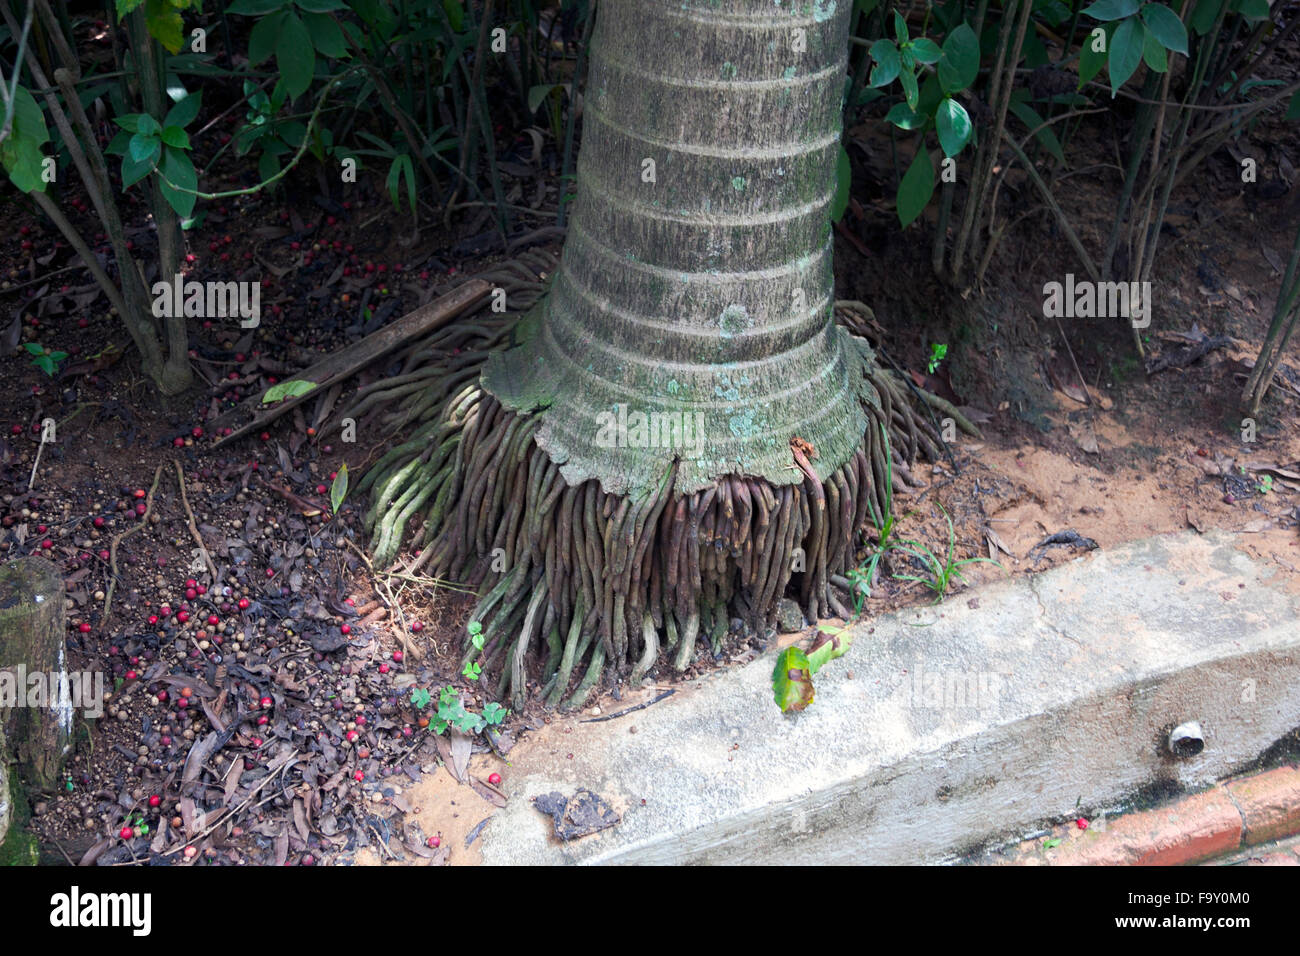 Palm tree roots immagini e fotografie stock ad alta risoluzione - Alamy